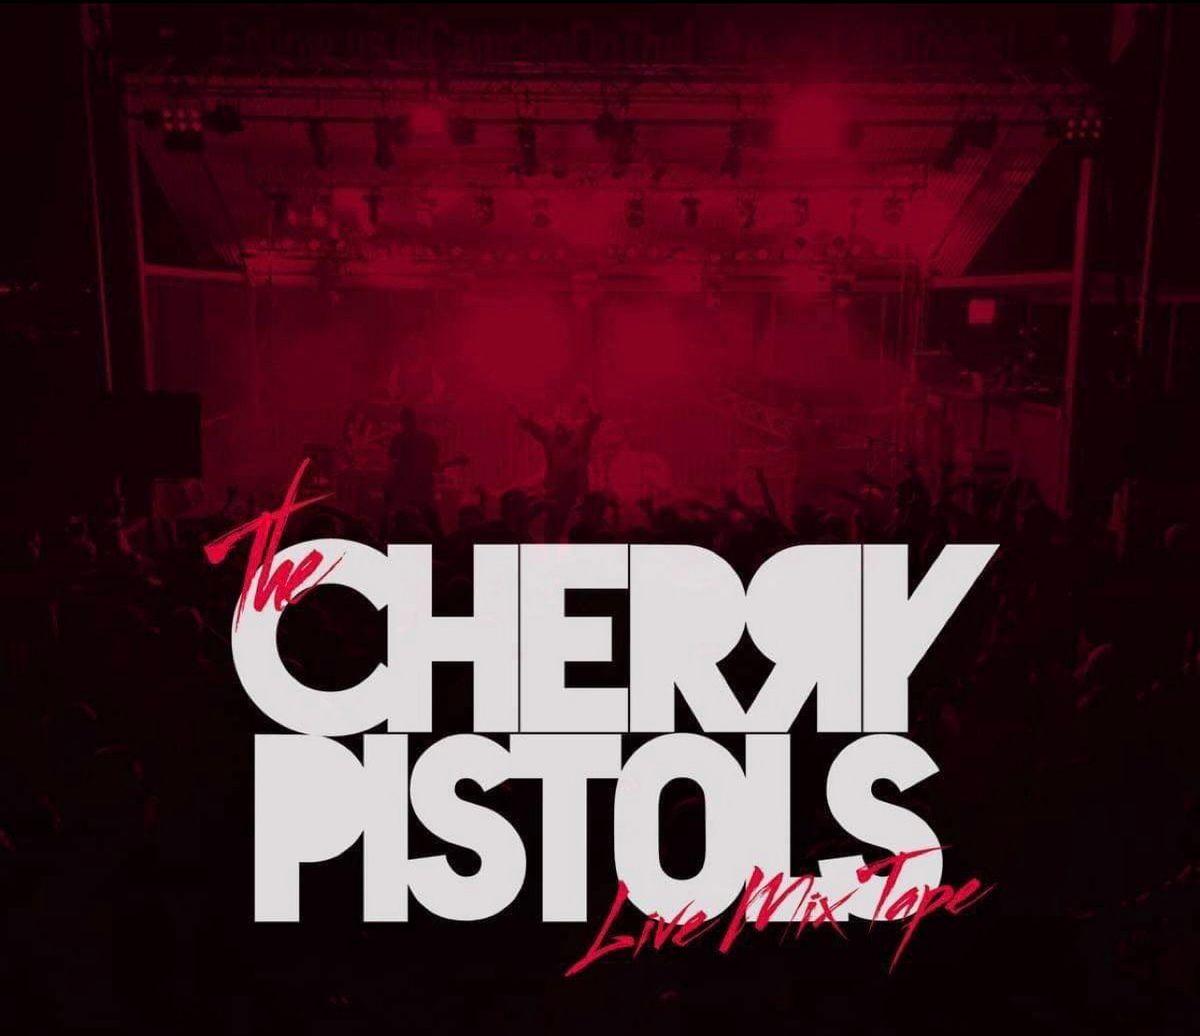 Cherry Pistols